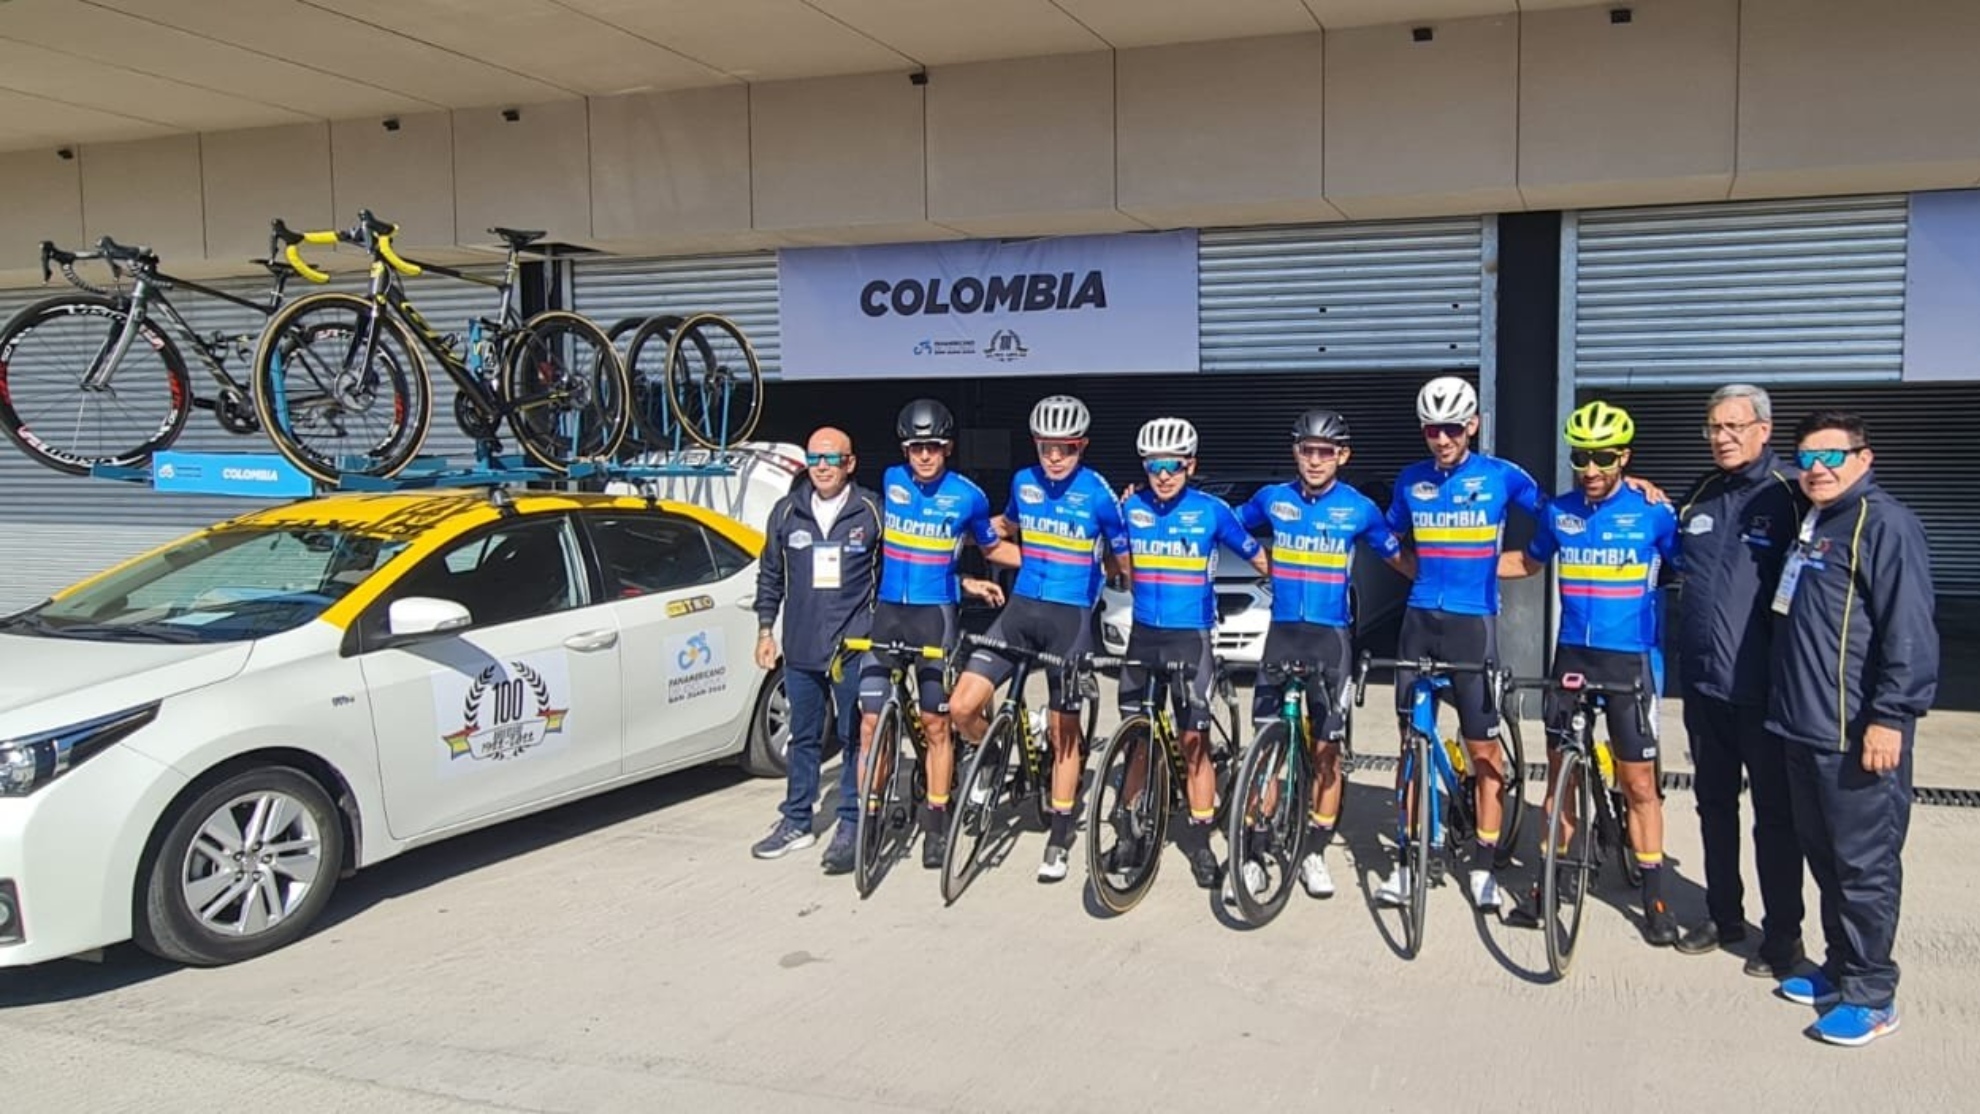 Ciclismo hoy: Colombia, campeones panamericanos de ciclismo en el medallero general